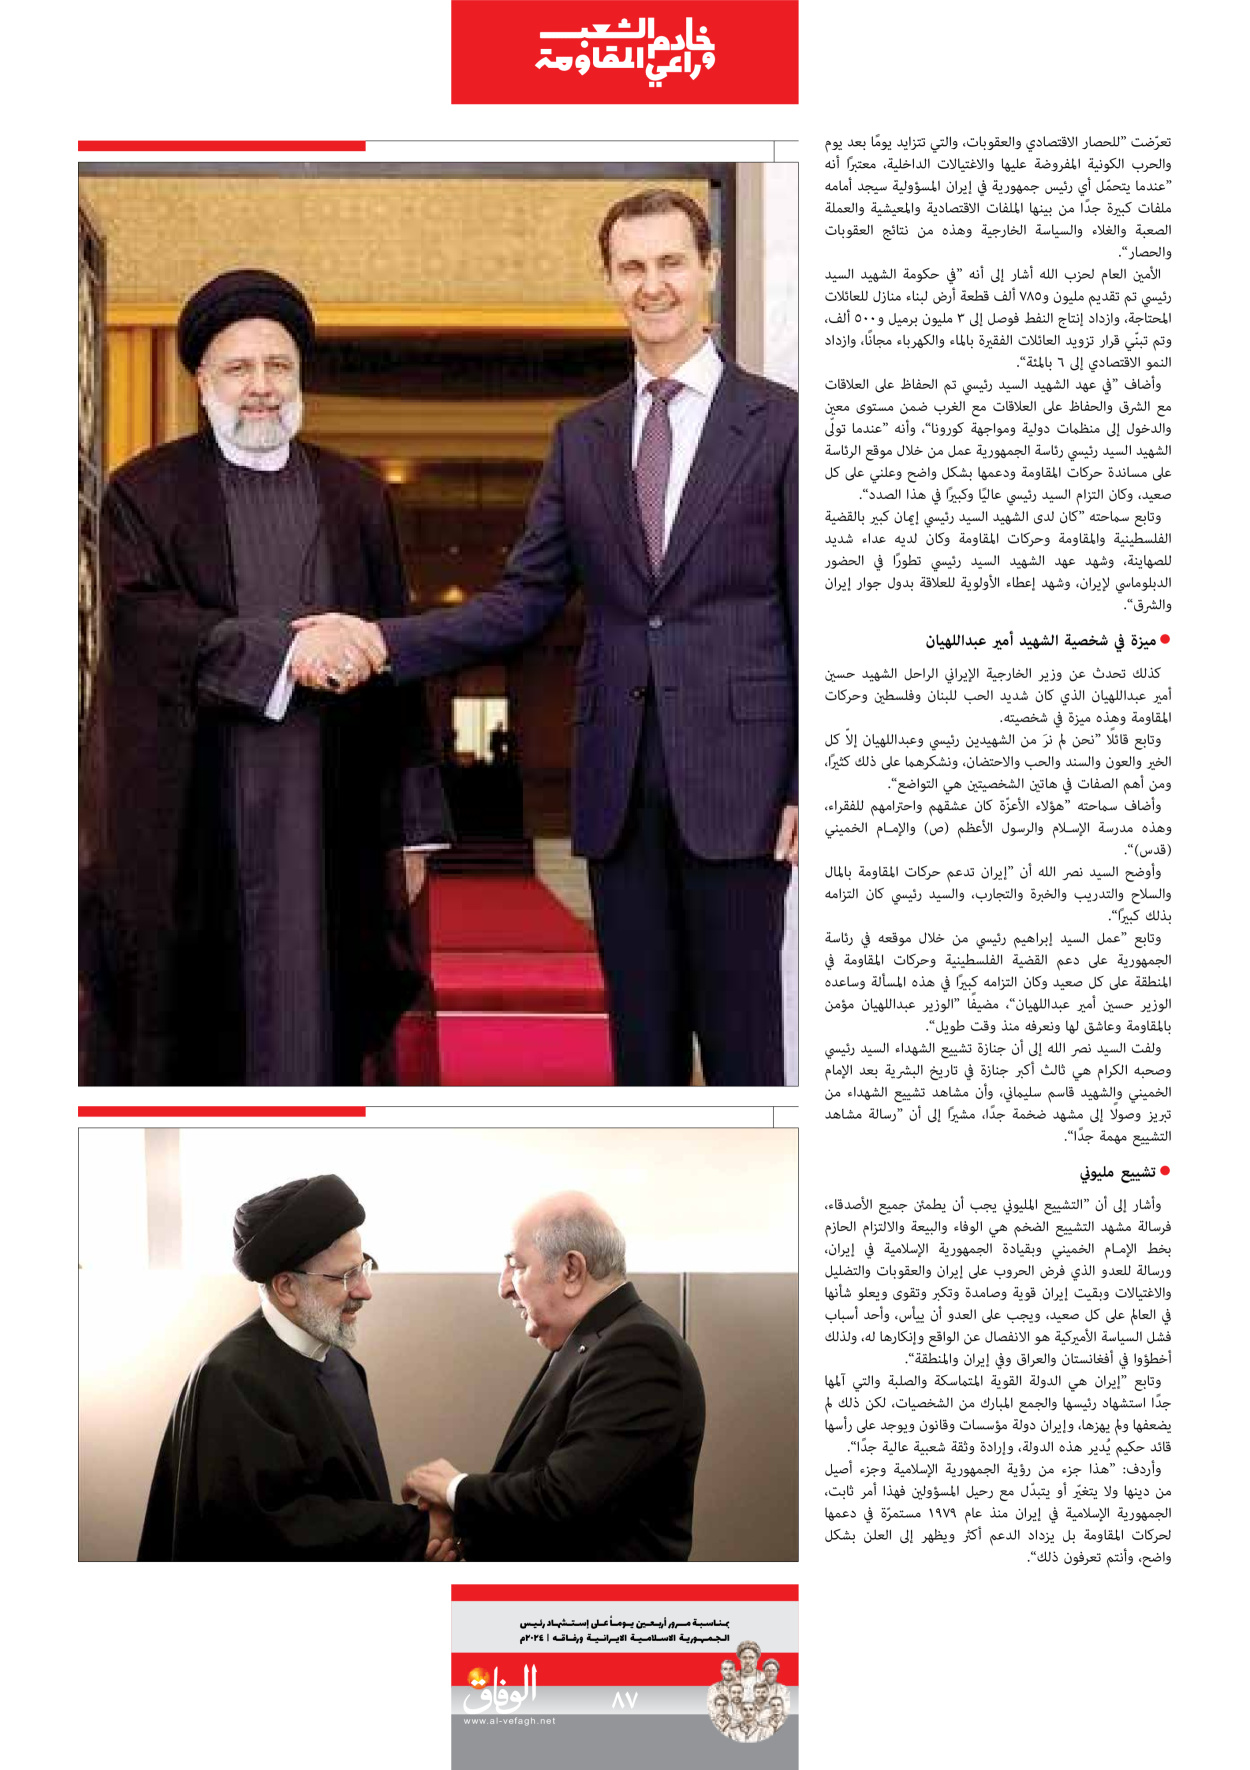 صحیفة ایران الدولیة الوفاق - ملحق ویژه نامه چهلم شهید رییسی - ٢٩ يونيو ٢٠٢٤ - الصفحة ۸۷